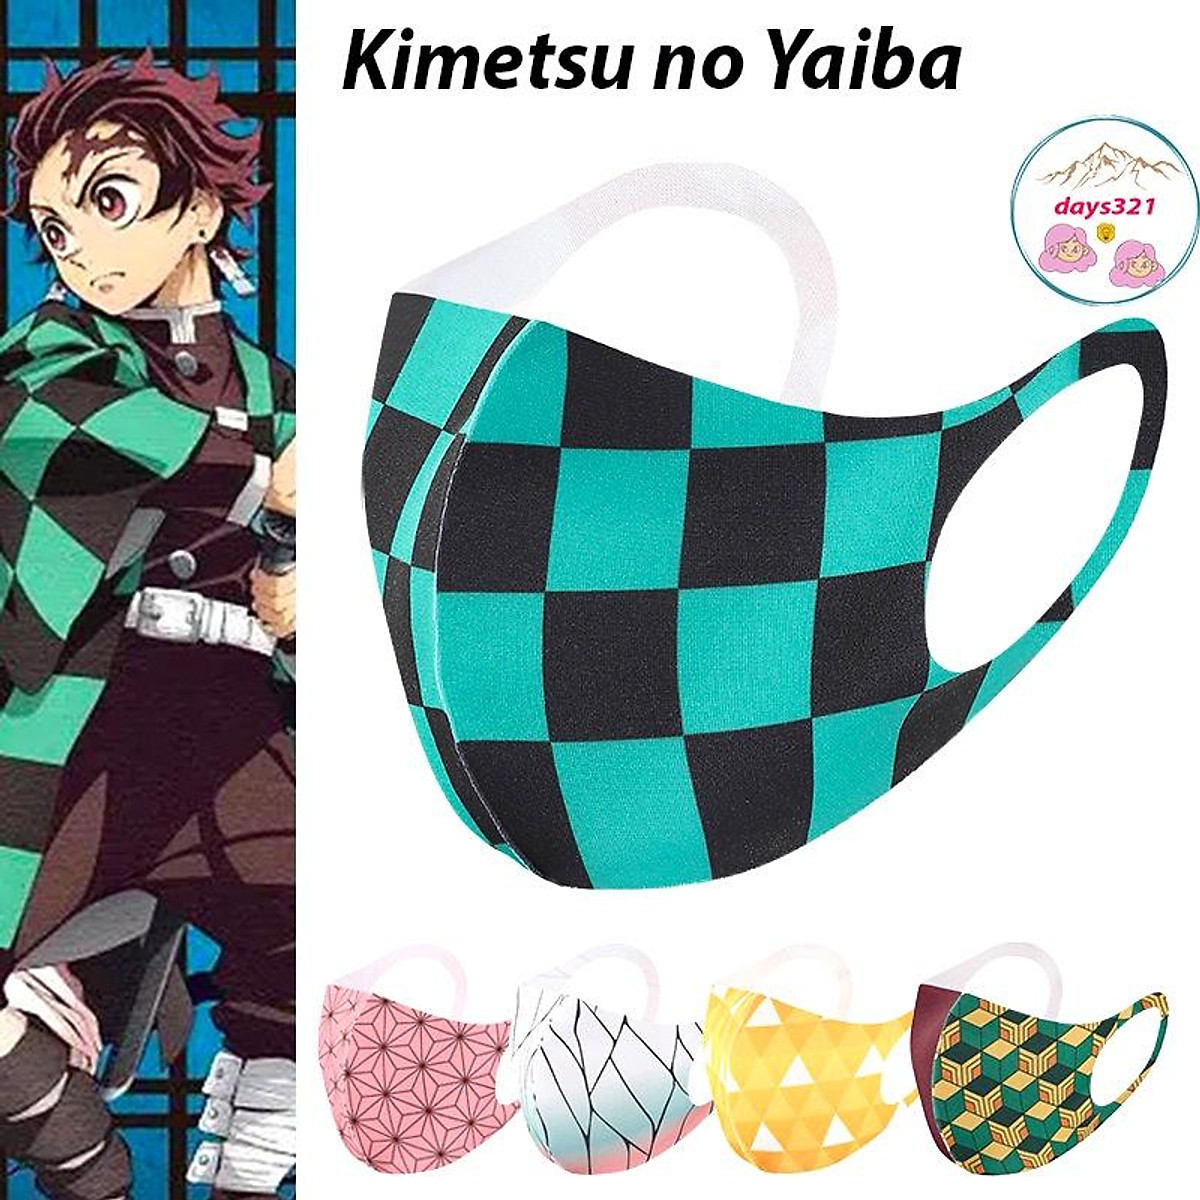 Khẩu trang anime Kimetsu no Yaiba không chỉ bảo vệ bạn khỏi bụi bẩn, mà còn là món phụ kiện thời trang đặc biệt. Với các hình vẽ được in trực tiếp lên khẩu trang, bạn có thể chọn cho mình nhân vật yêu thích và đem lại cho mình một phong cách độc đáo. Khám phá ngay các mẫu khẩu trang anime Kimetsu no Yaiba độc đáo trên thị trường!